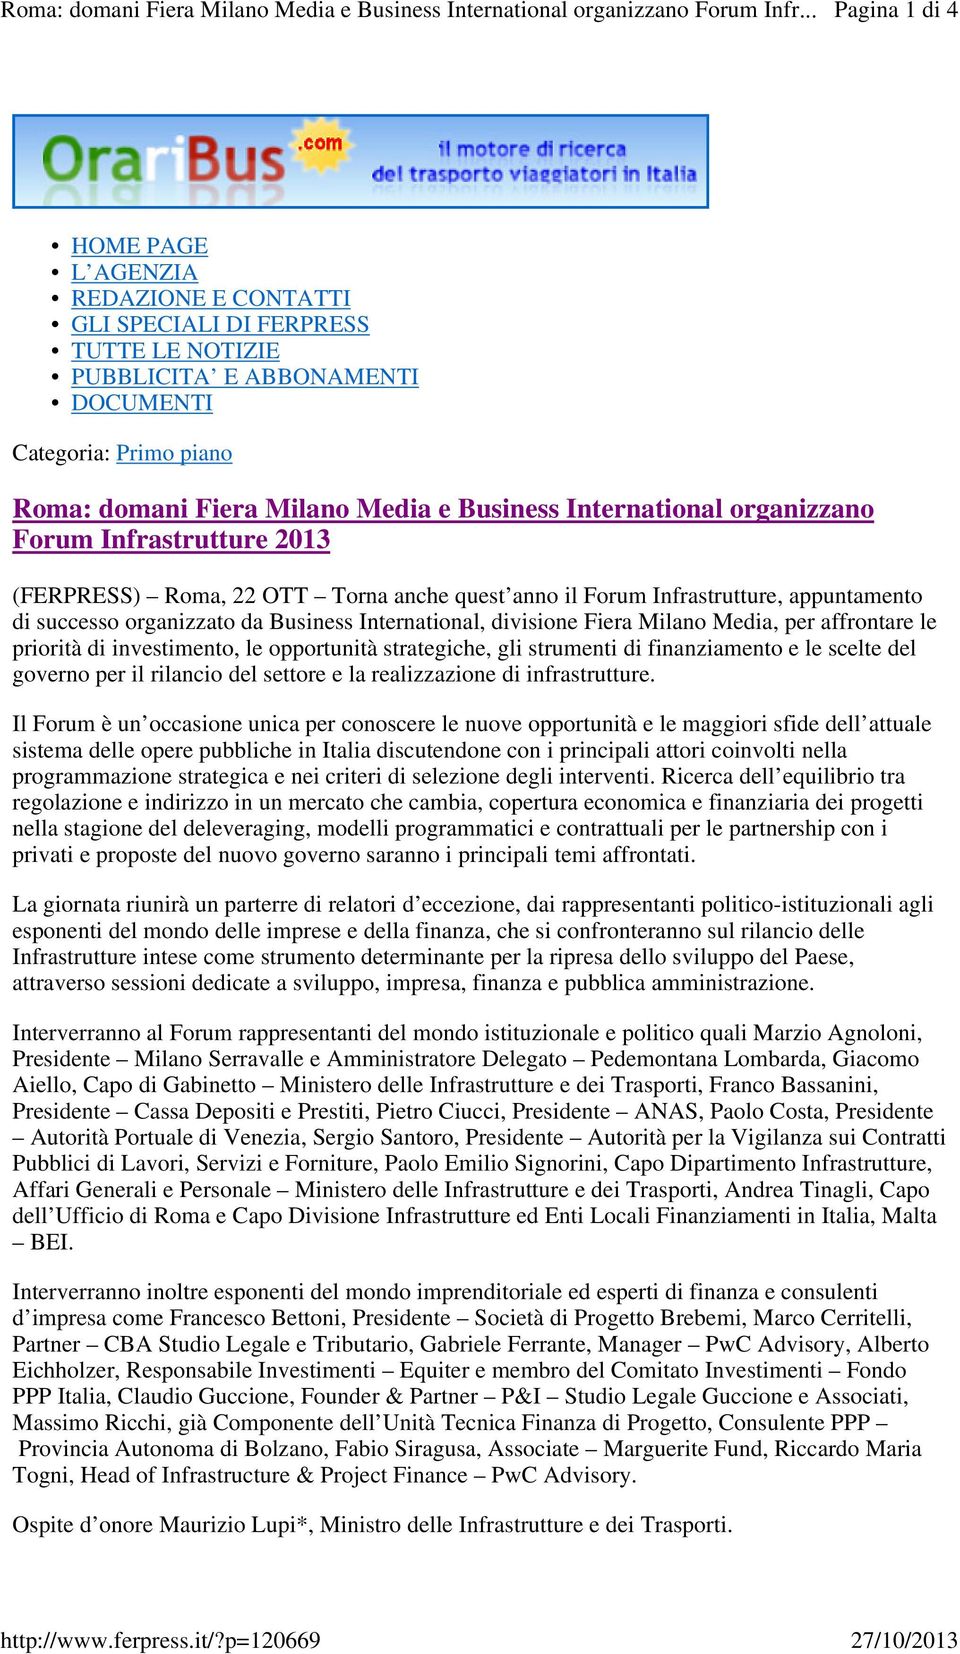 Milano Media e Business International organizzano Forum Infrastrutture 2013 (FERPRESS) Roma, 22 OTT Torna anche quest anno il Forum Infrastrutture, appuntamento di successo organizzato da Business